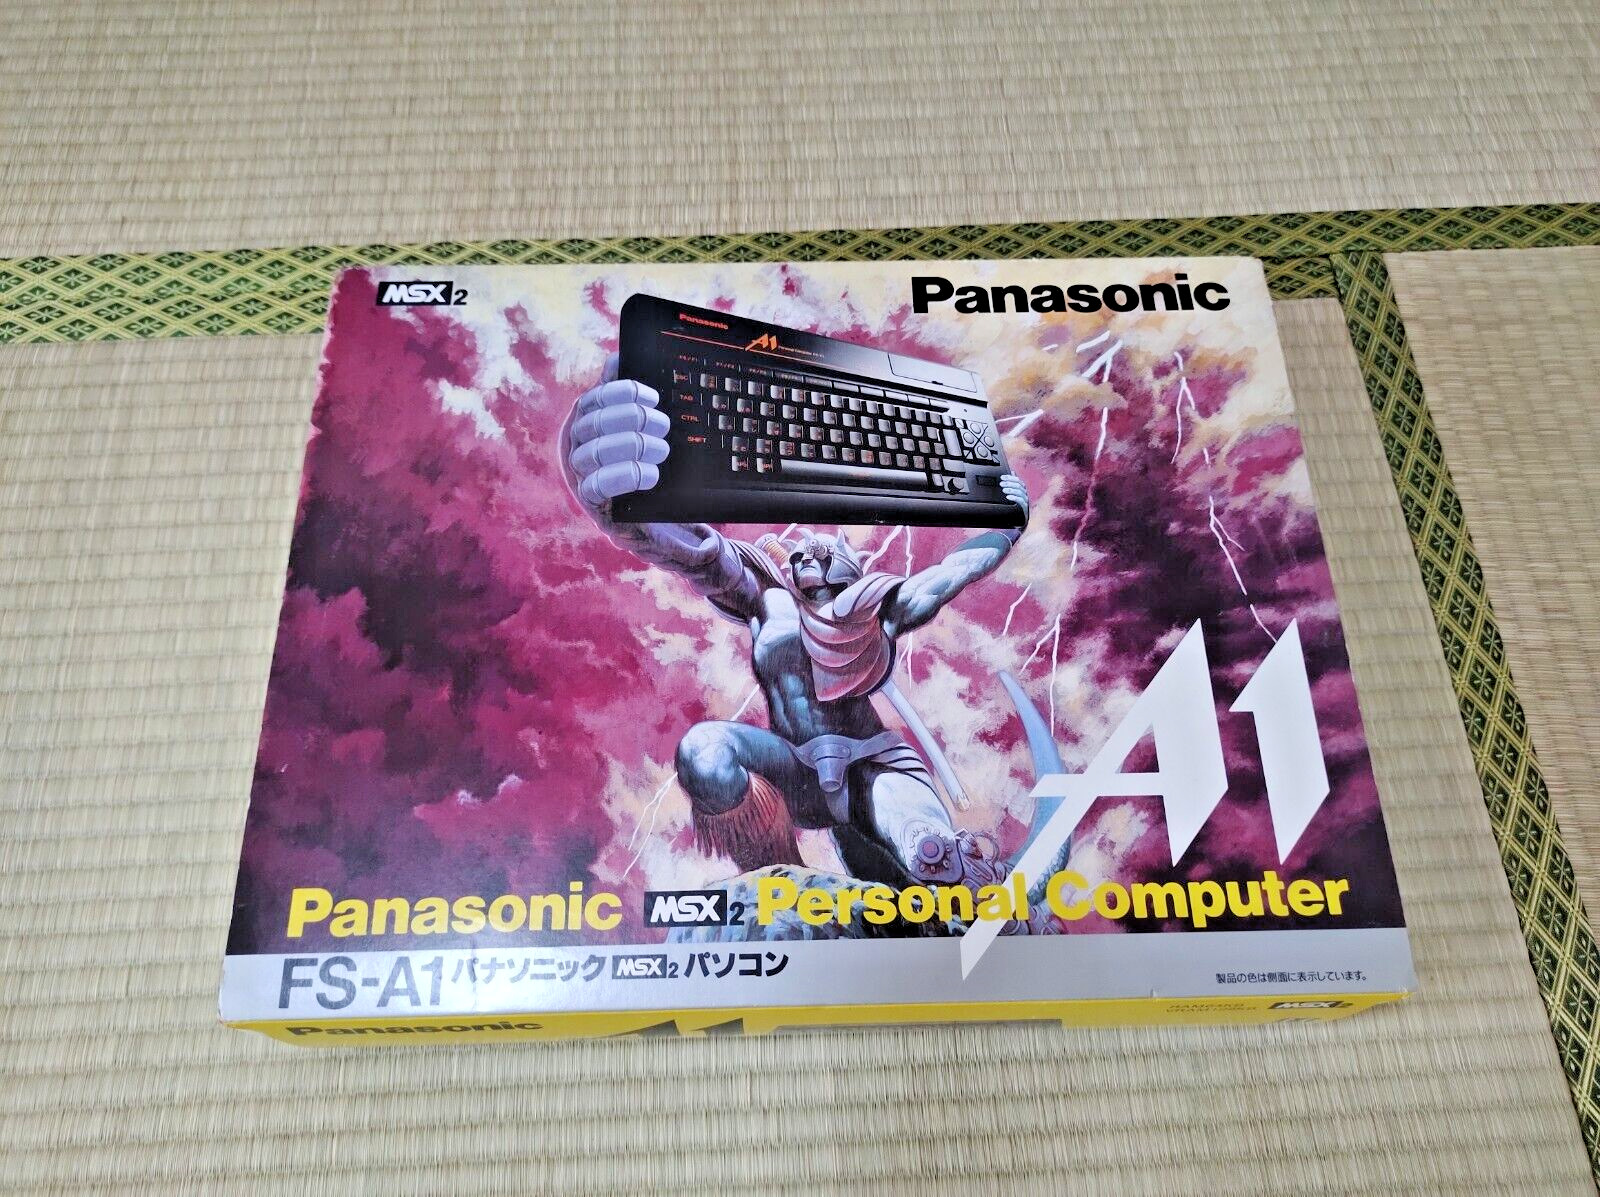 Panasonic MSX2 FS-A1 MK2 Personal Computer Brand New READ DESCRIPTION